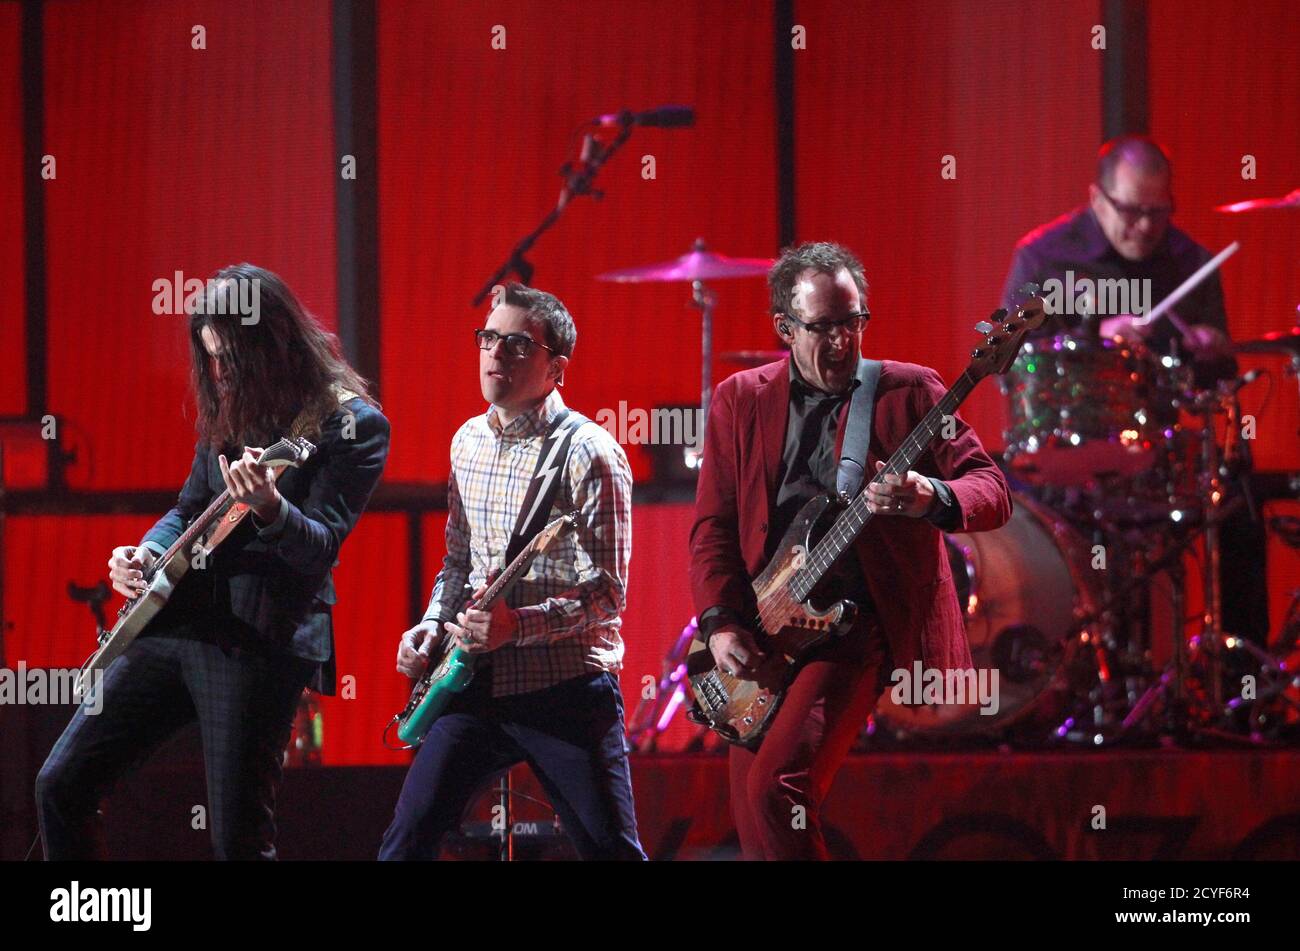 Le groupe Weezer se produit lors du festival de musique iHeartRadio 2014 à Las Vegas, Nevada, le 20 septembre 2014. REUTERS/Steve Marcus (ETATS-UNIS - Tags: ENTERTAINMENT) Banque D'Images